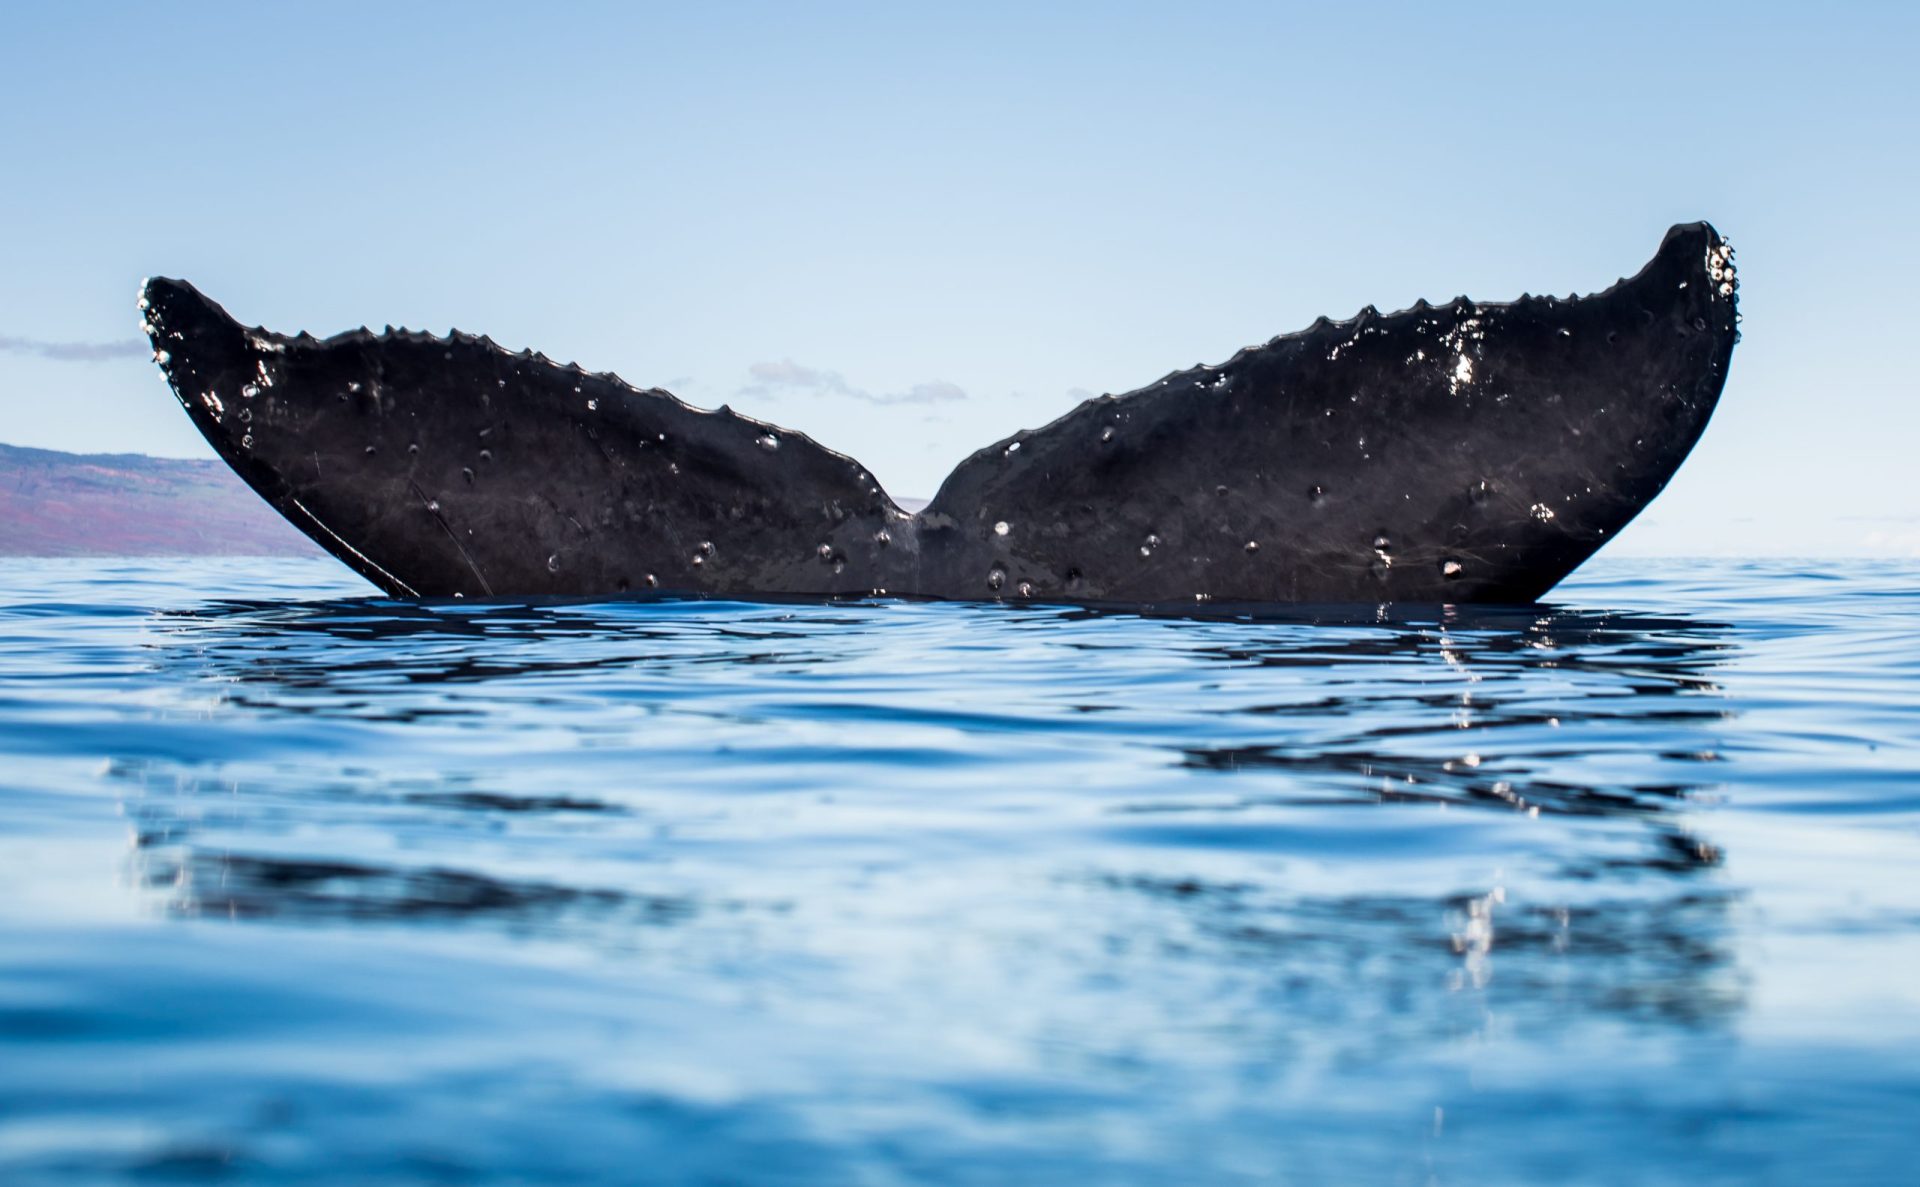 Sismo. Seis baleias mortas deram à costa no Chipre